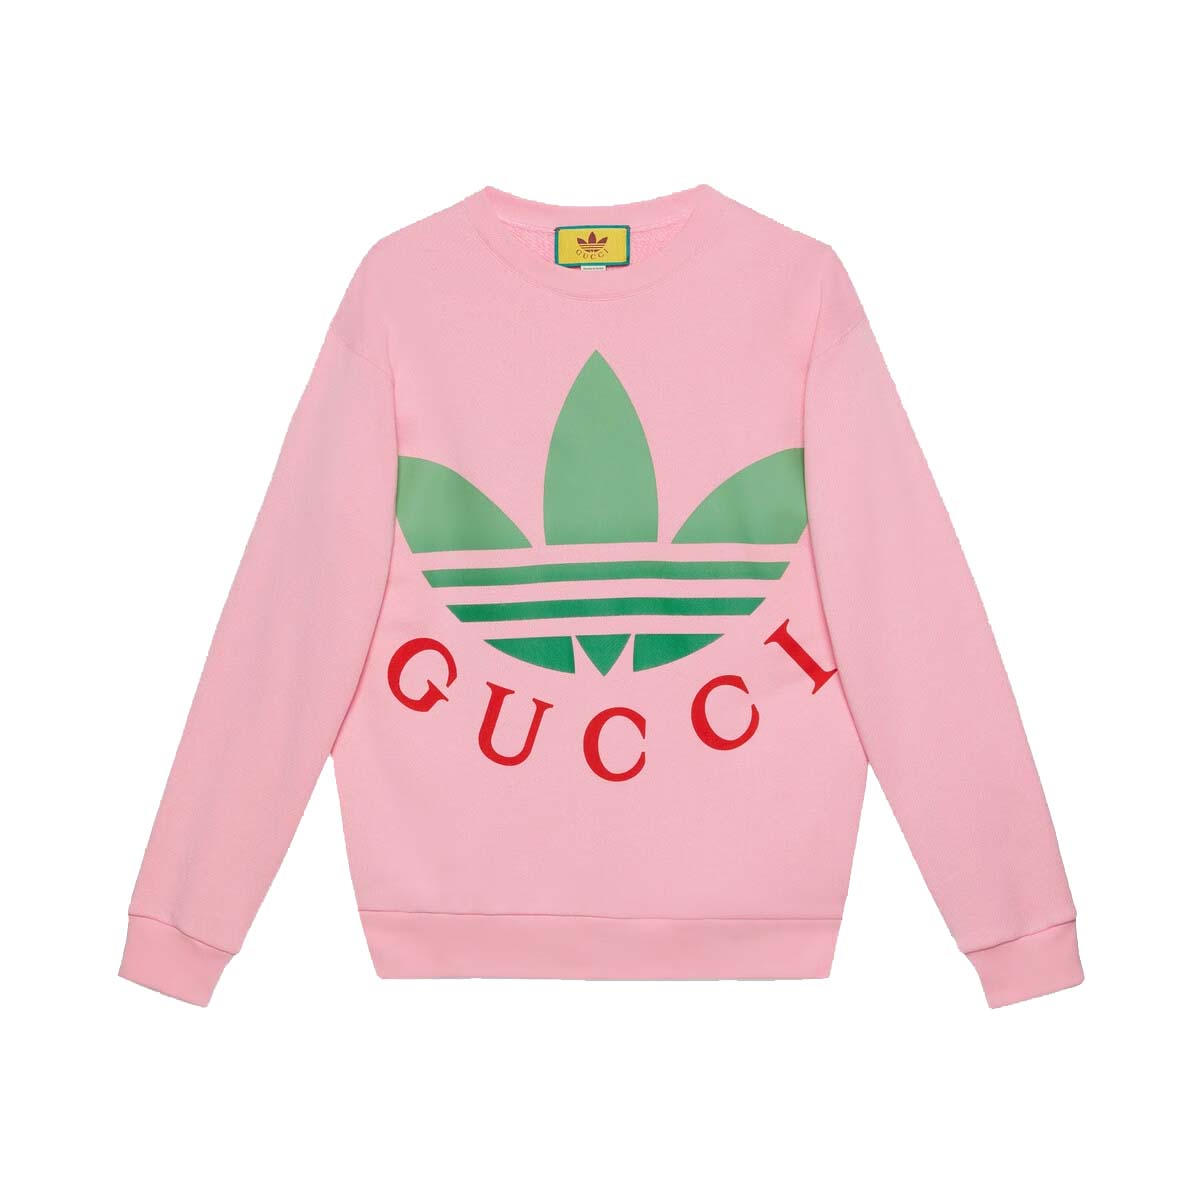 Gucci x adidas Cotton Jersey Sweatshirt Pink - SS23 - US